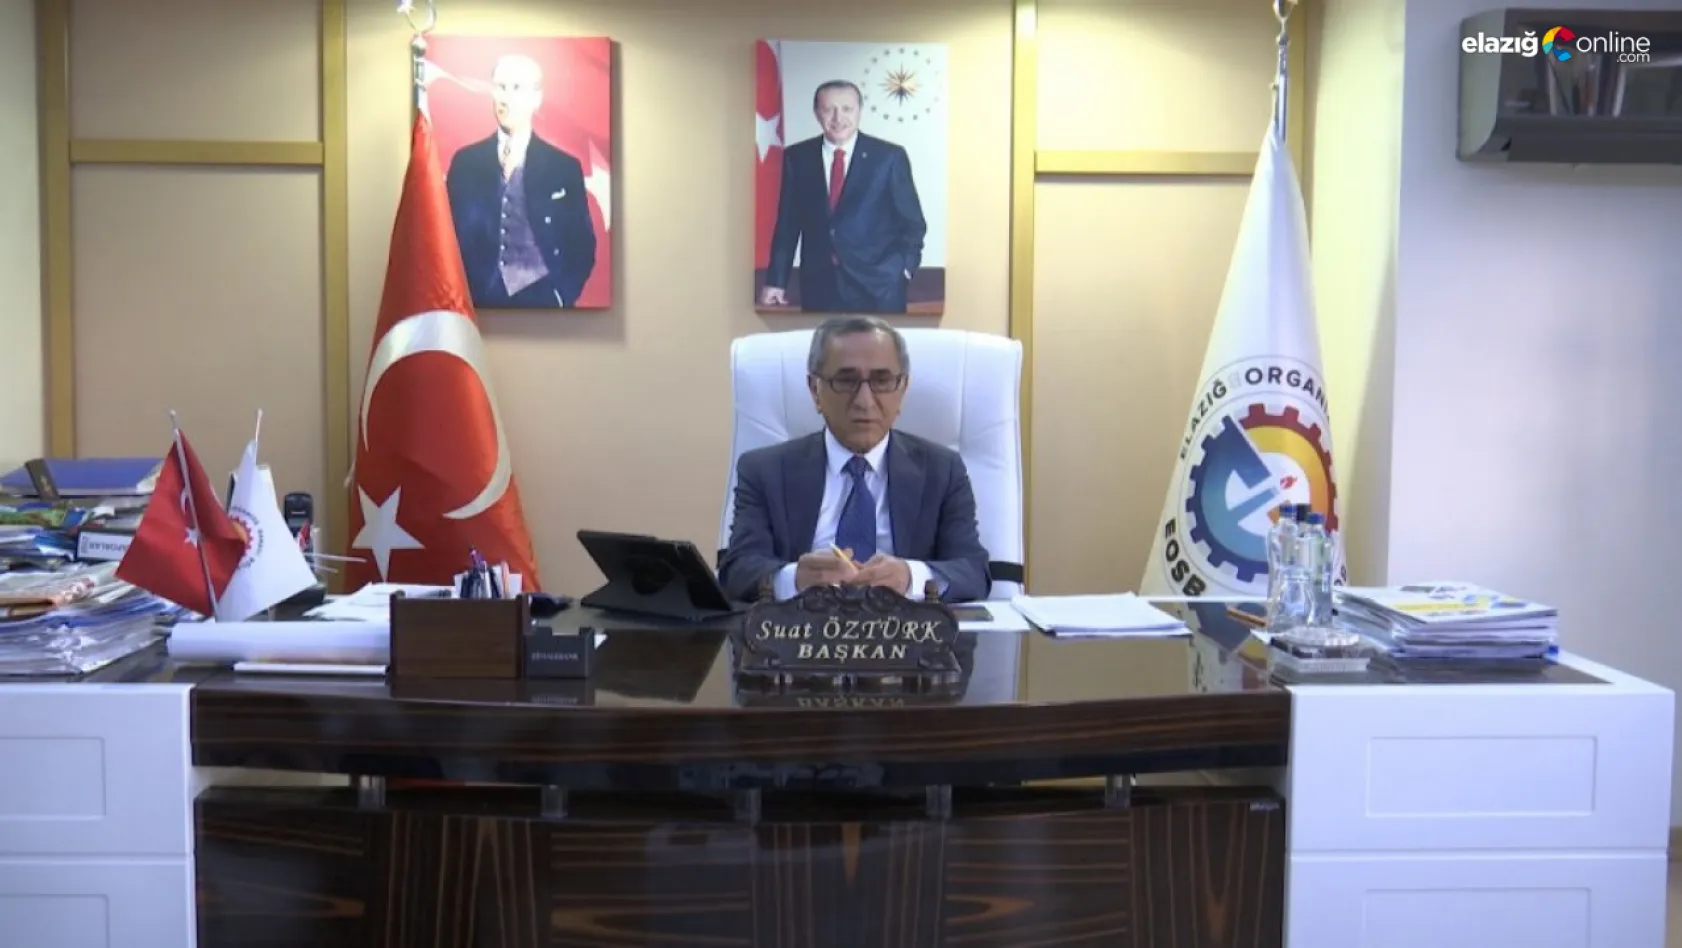 Elazığ OSB'de çalışmalar devam devam ediyor! Başkan Öztürk'ten 5. etap ve tekstil kent açıklaması